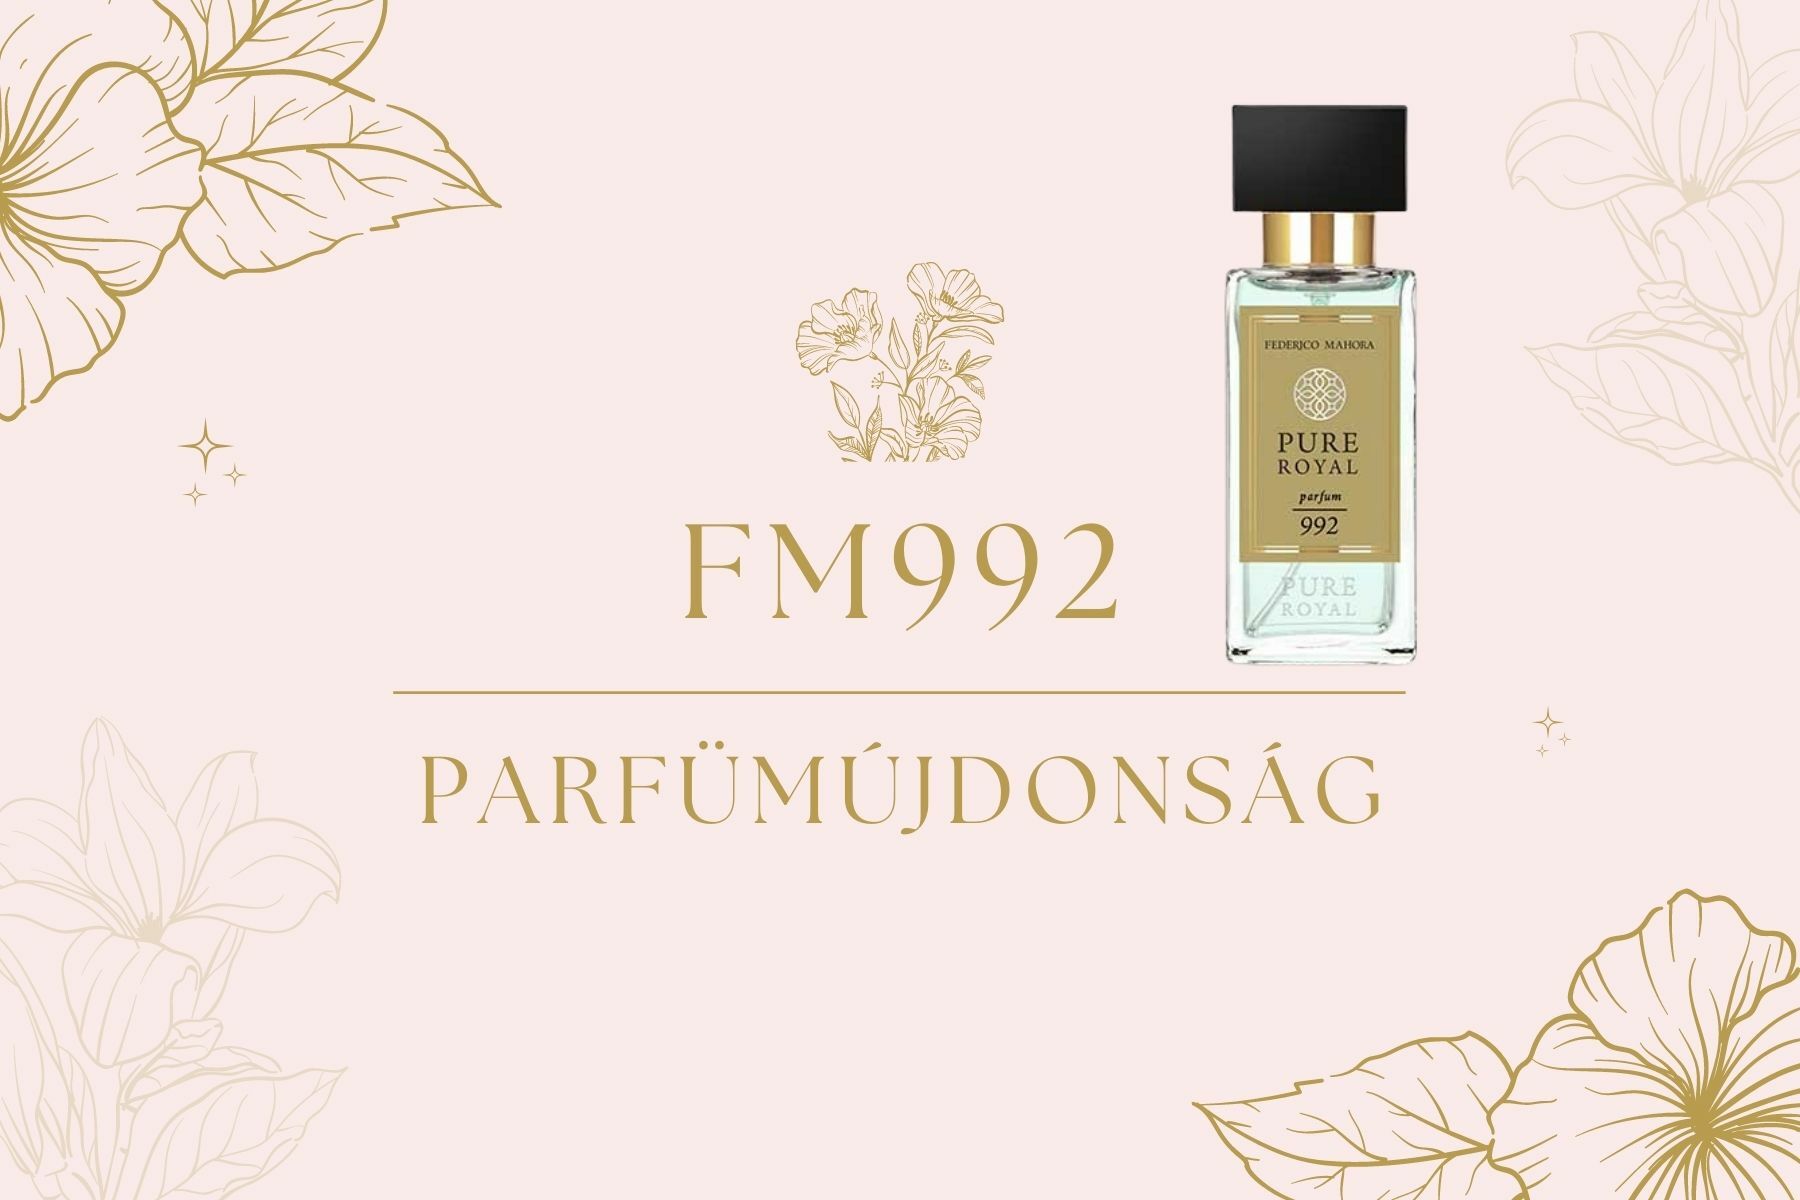 FM WORLD parfüméria parfümújdonság FM992